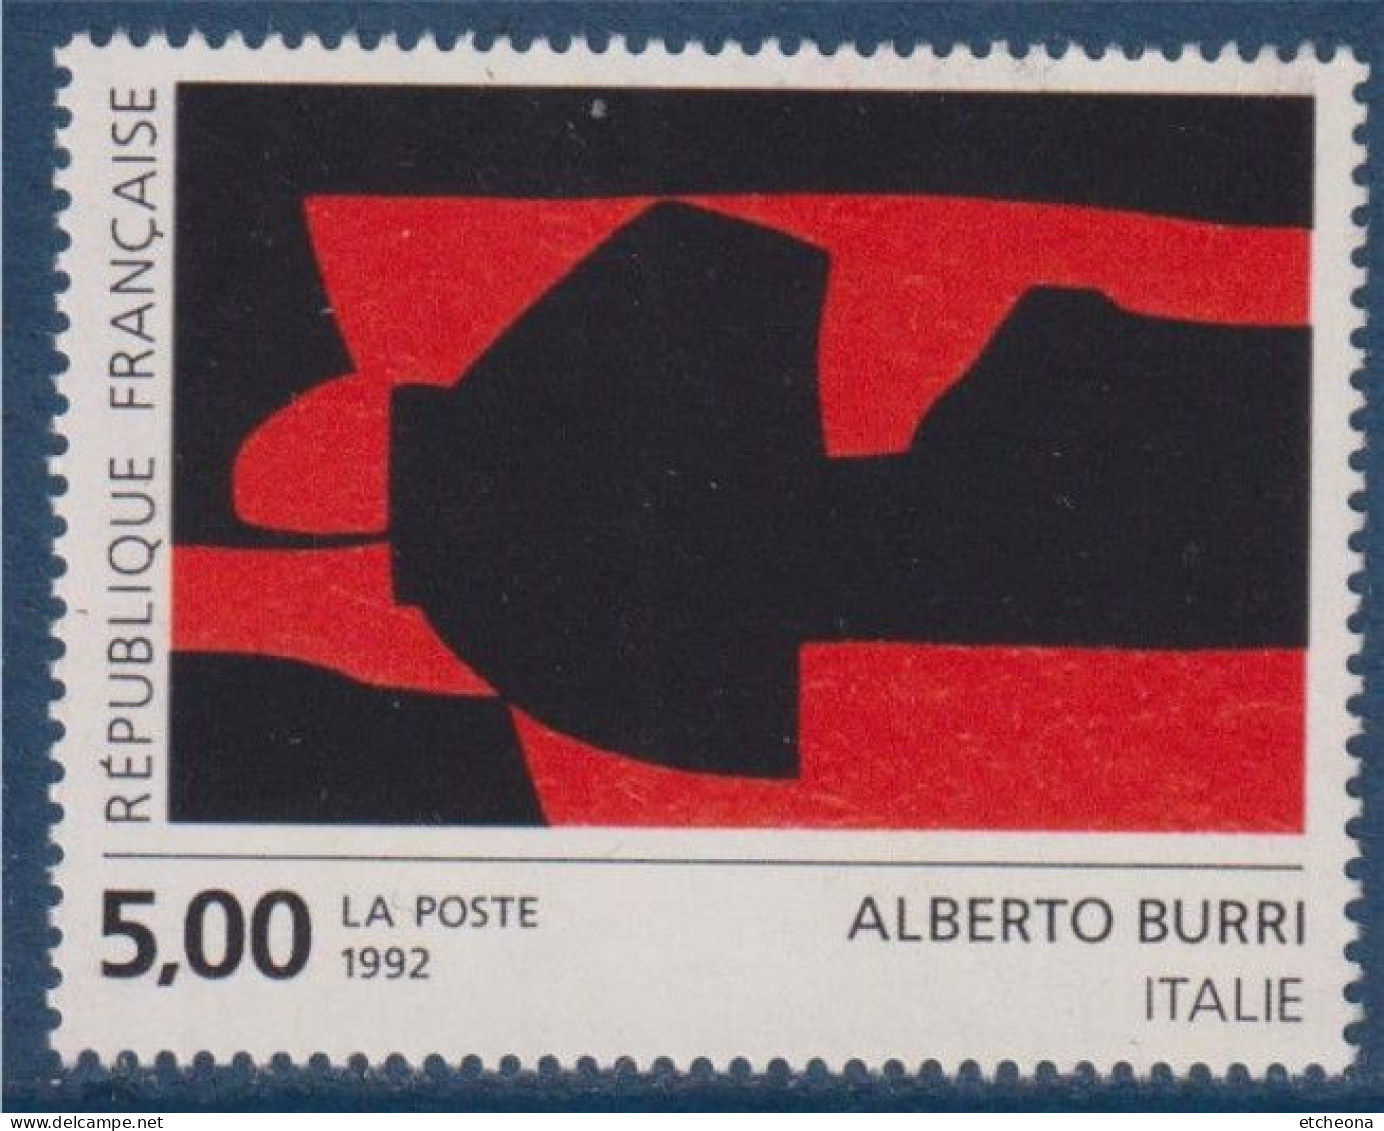 Série Européenne D'art Contemporain "Création Pour La Poste" D'Alberto Burri N°2780 Neuf Italie - Unused Stamps